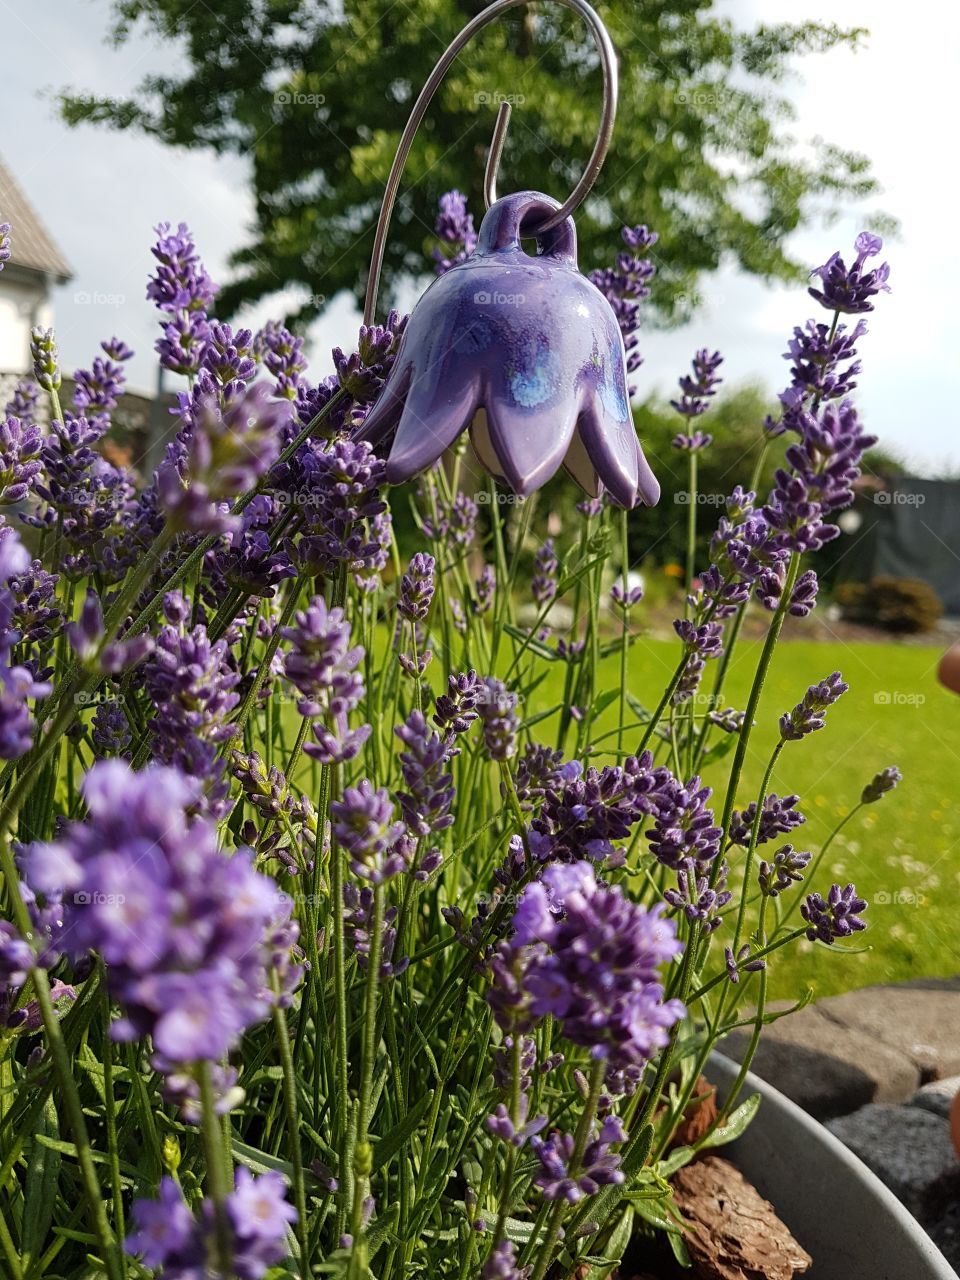 my own lavenderfield